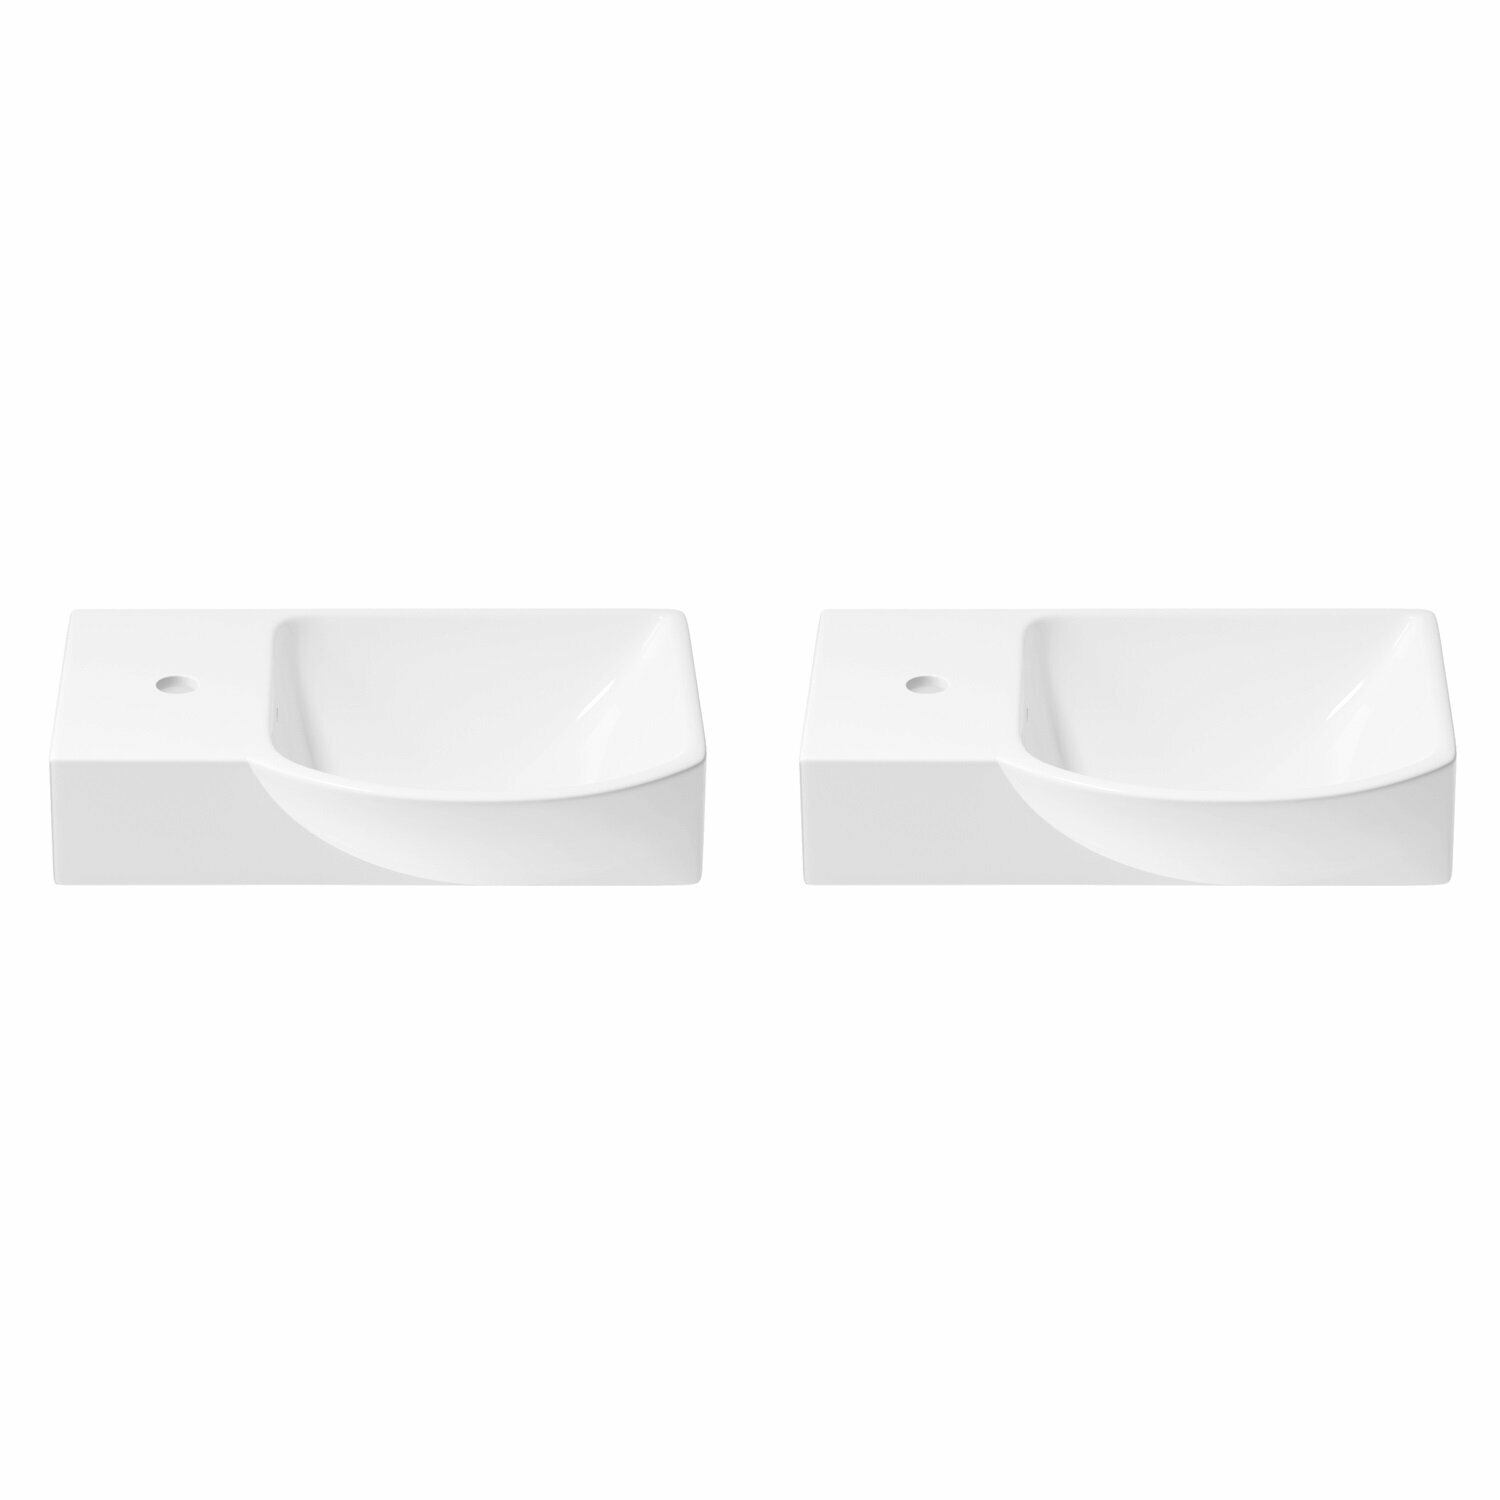 Подвесная/накладная раковина для ванной Wellsee WC Area 151808001 в наборе 2 в 1: раковины 2 шт, ширина одного умывальника 45 см, цвет глянцевый белый